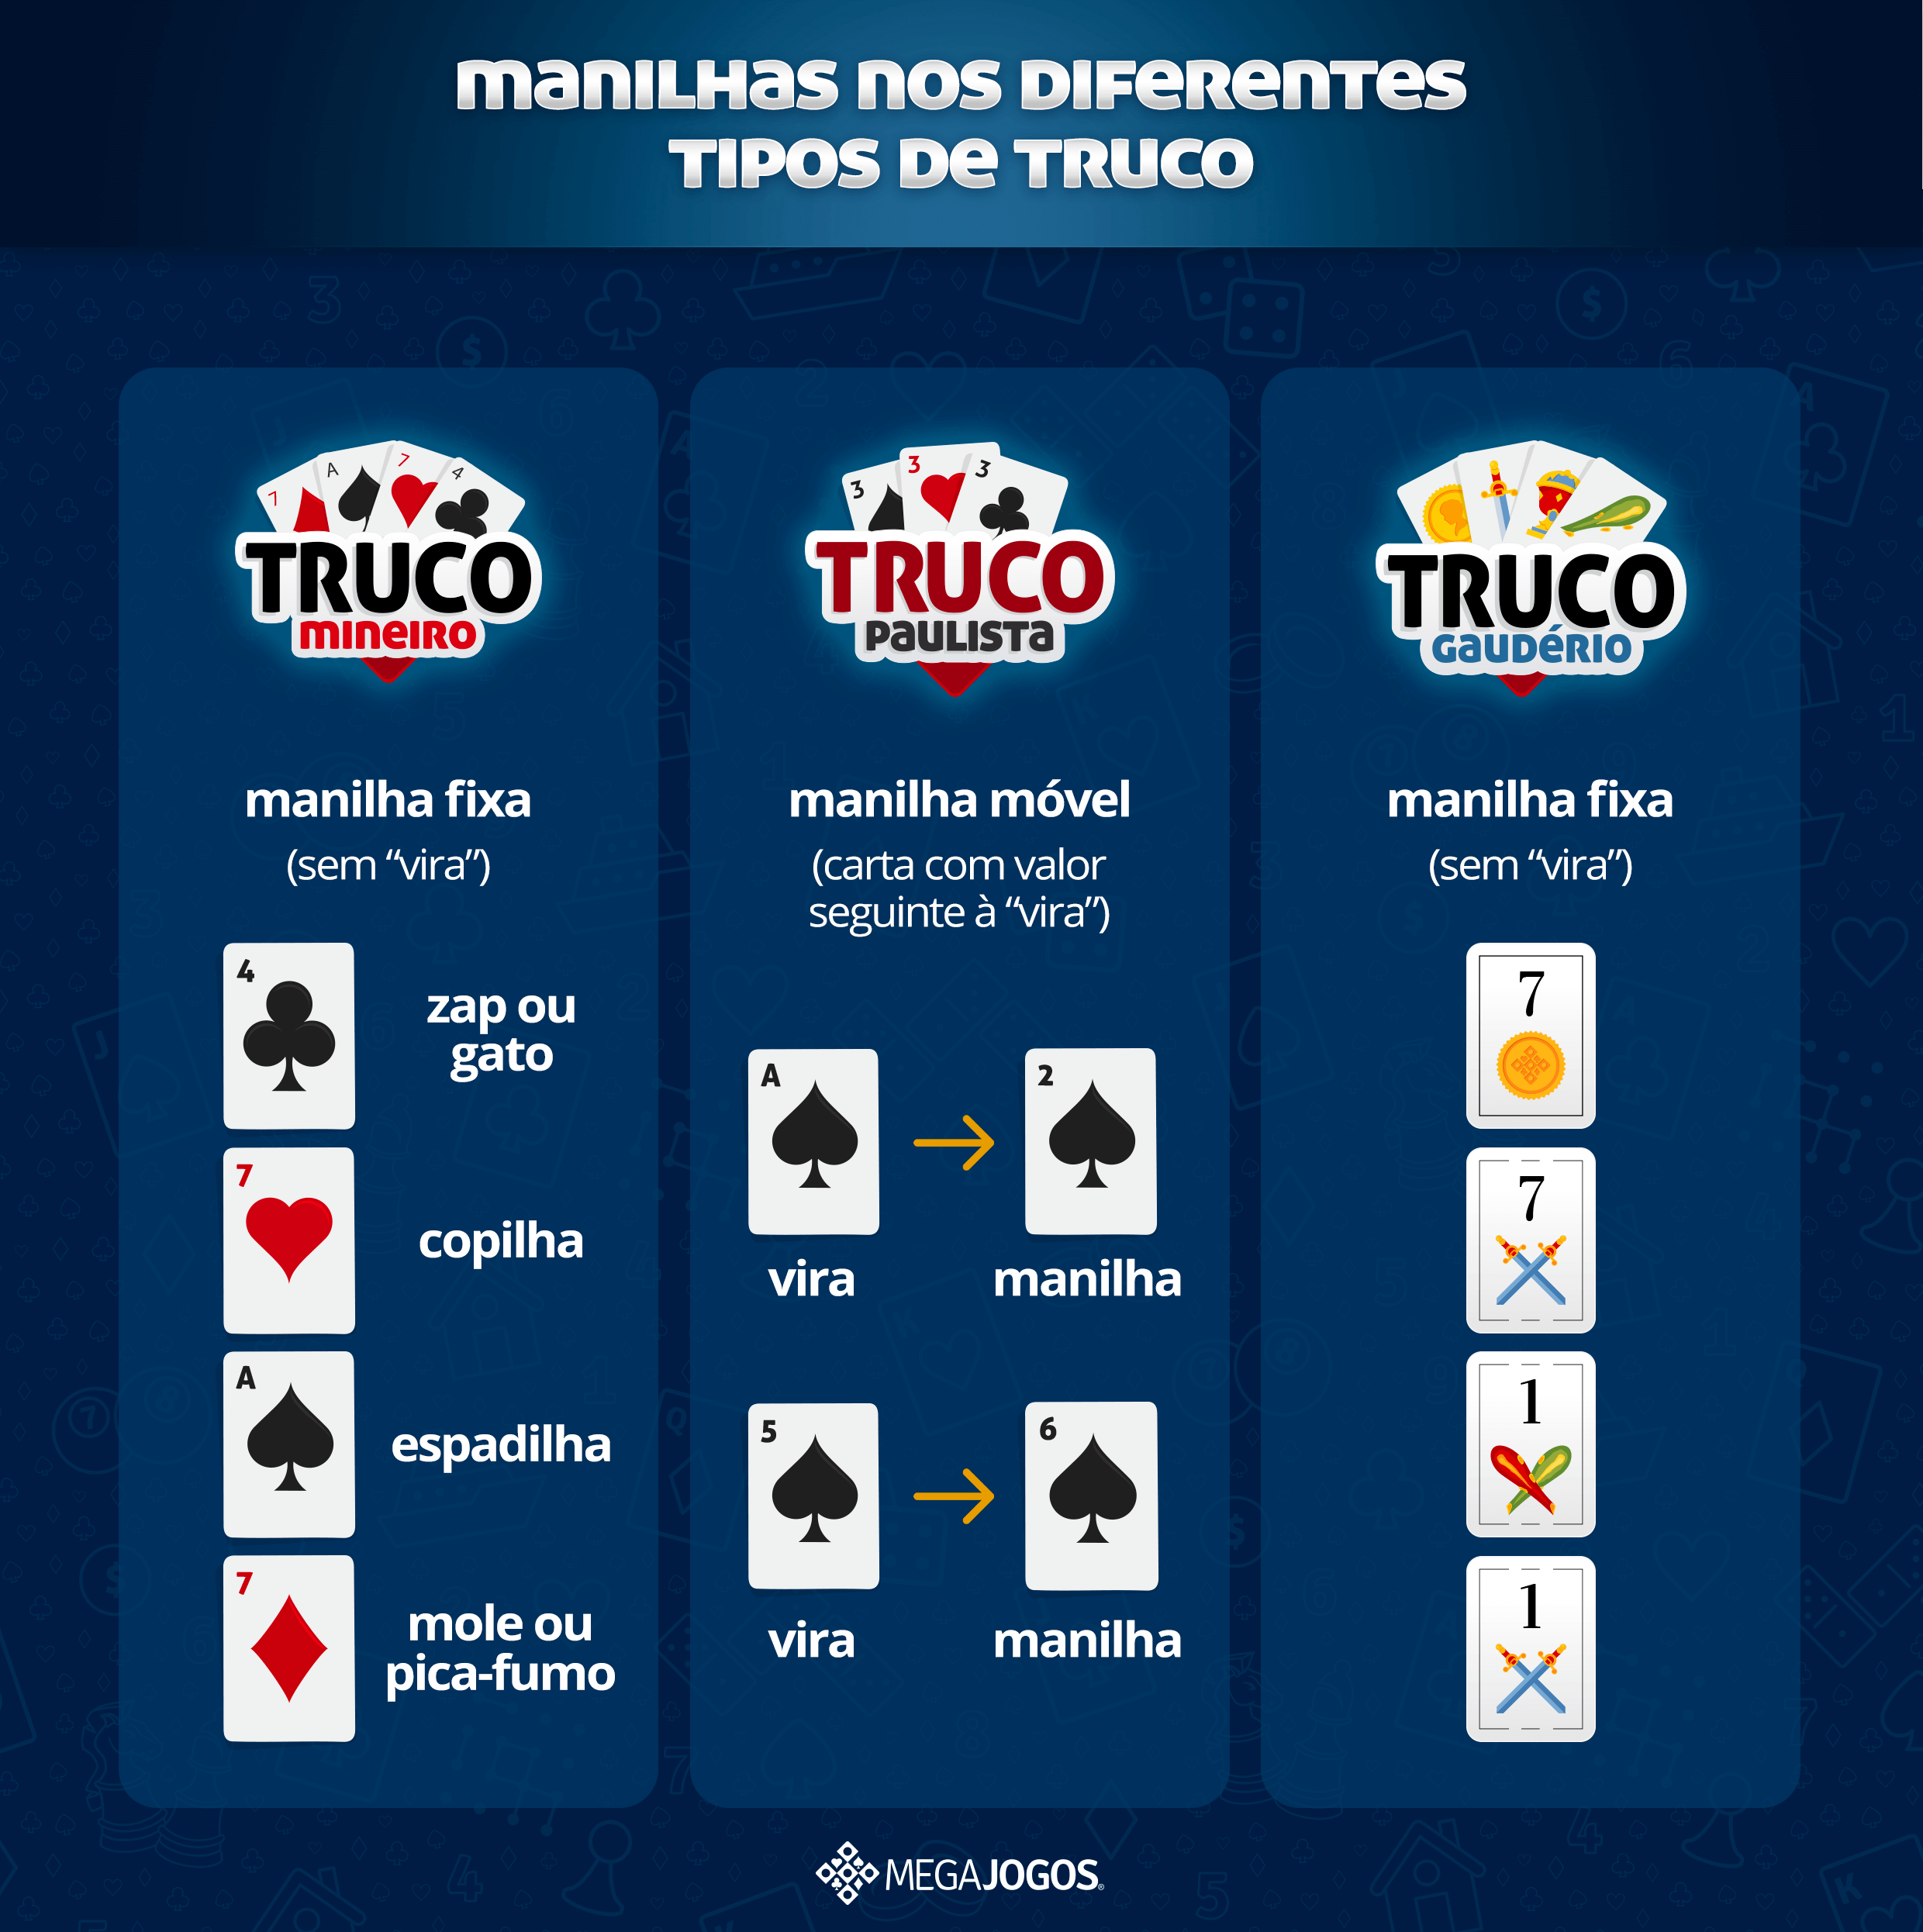 Diferenças entre cada truco: Paulista, Mineiro e Gaudério (Uruguaio)